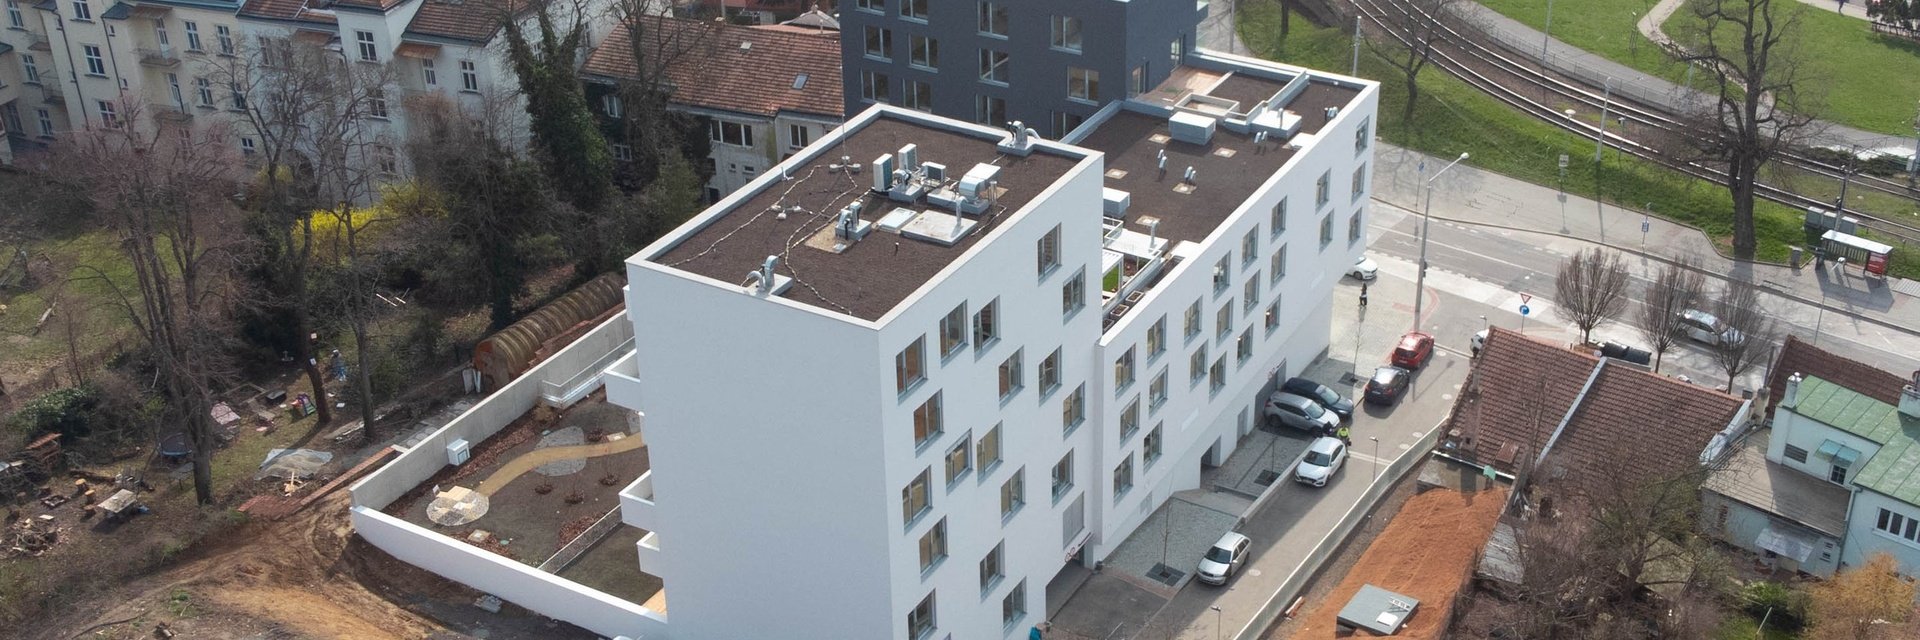 Nové Hlinky - prémiové bydlení v sousedství Masarykovy čtvrti